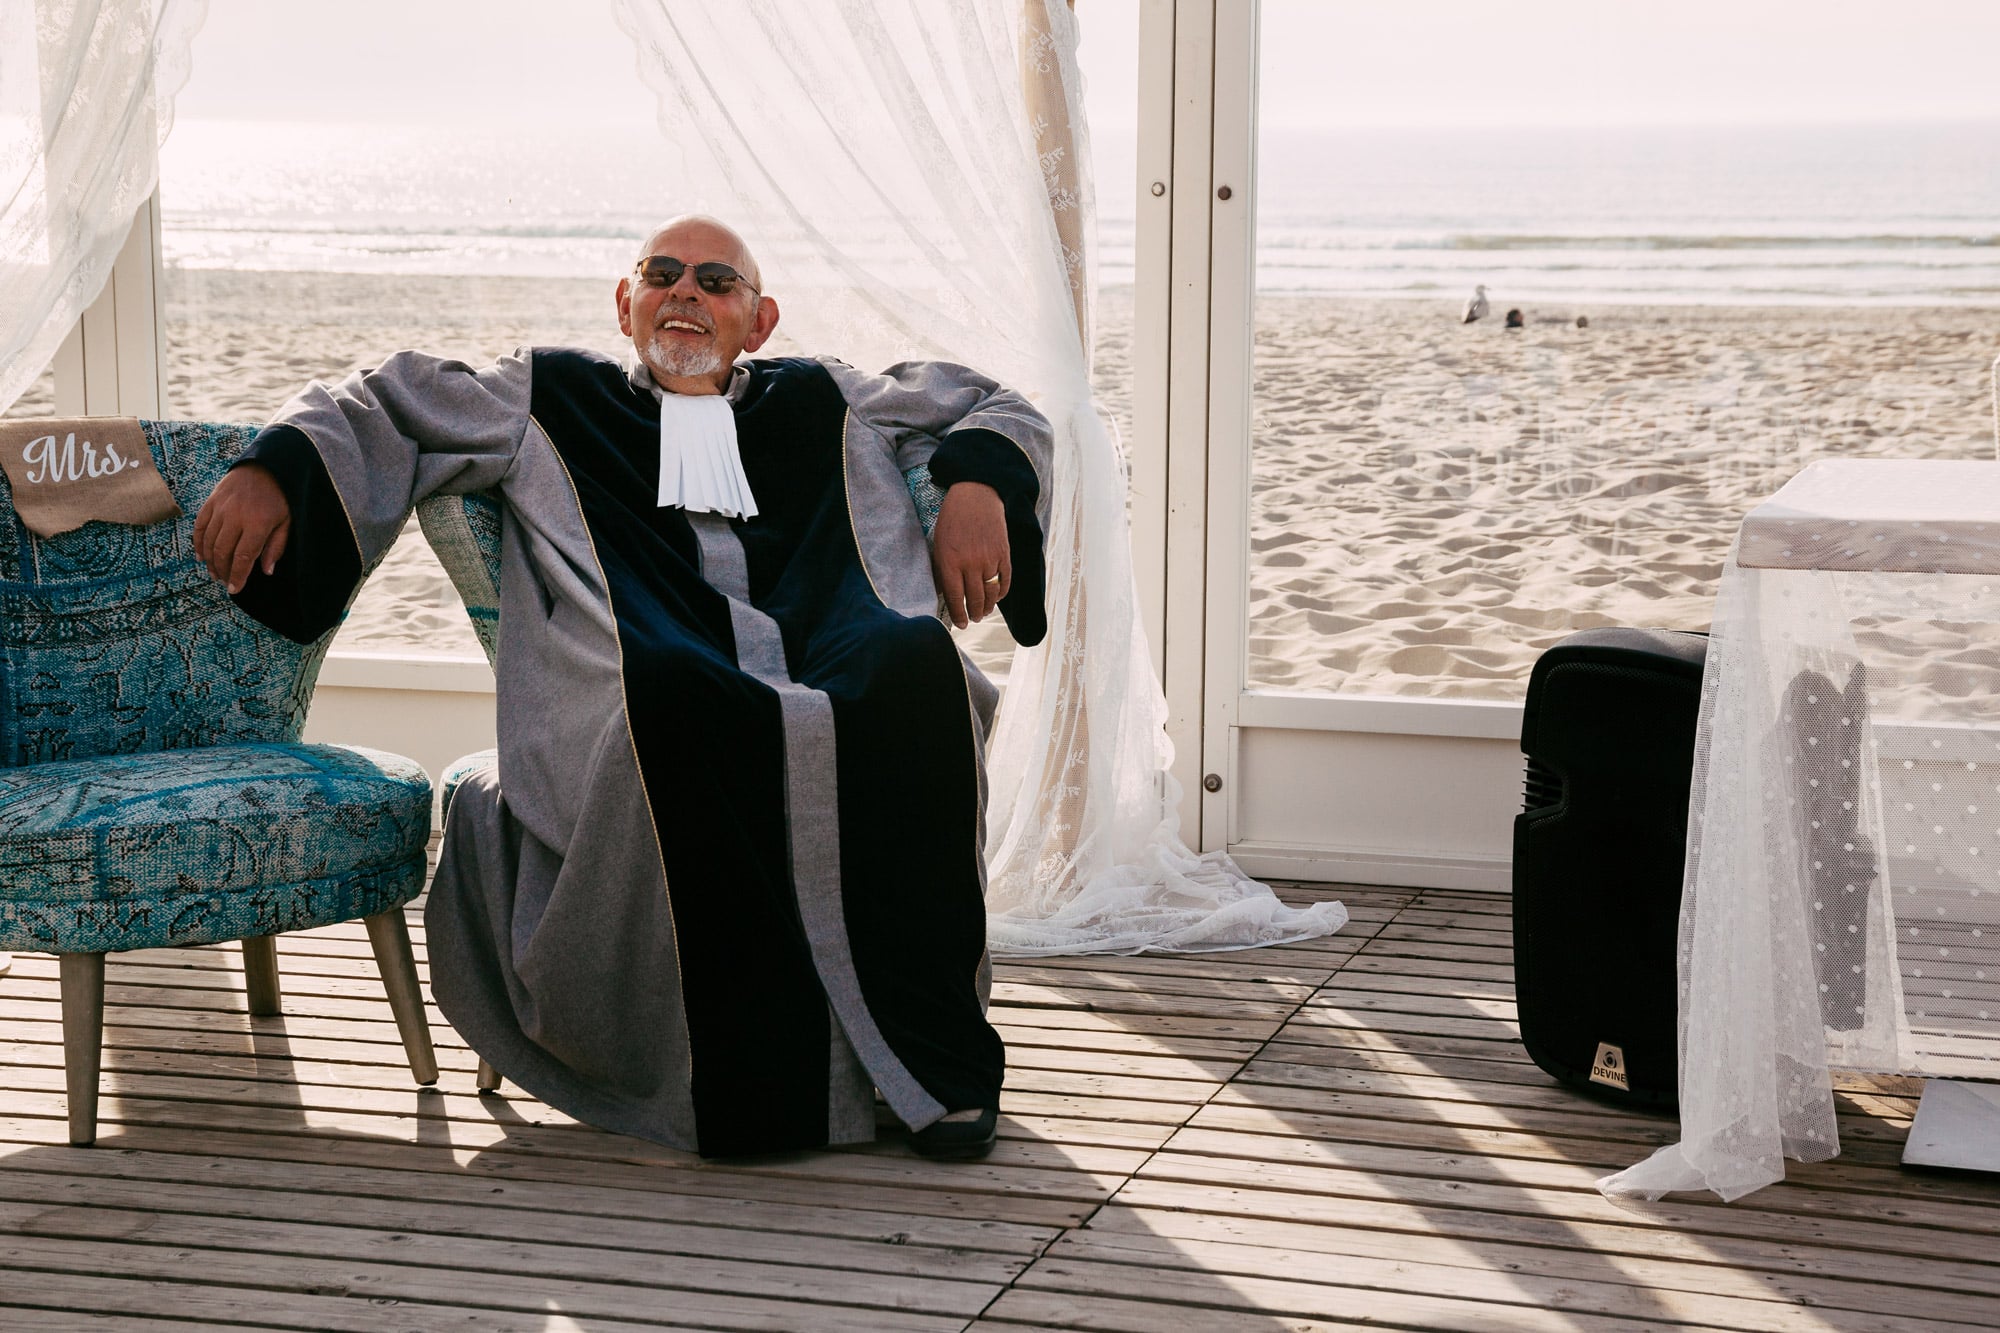     Een man in een badjas zittend op een stoel op het strand, genietend van de vredige sfeer en nadenkend over de schoonheid van de natuur.